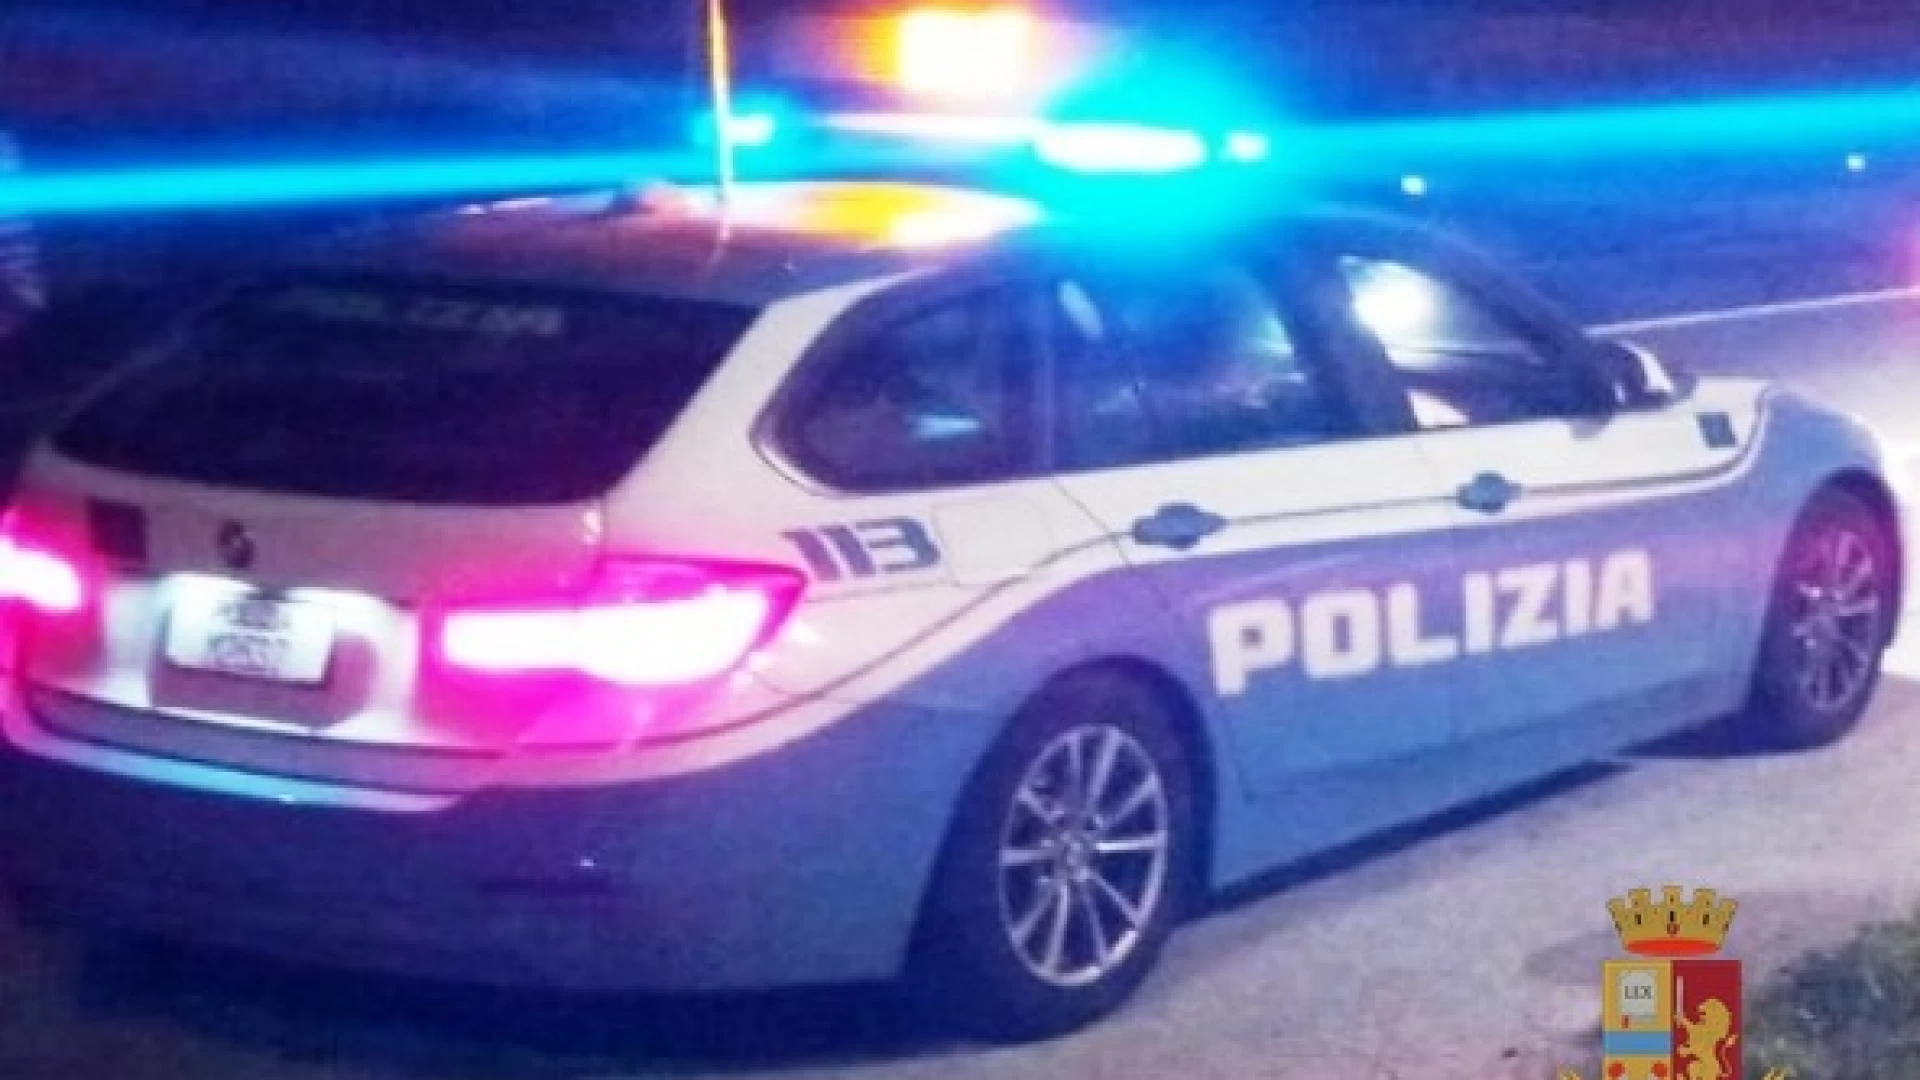 Isernia: la Polizia denuncia uomo per possesso di droga e una pistola